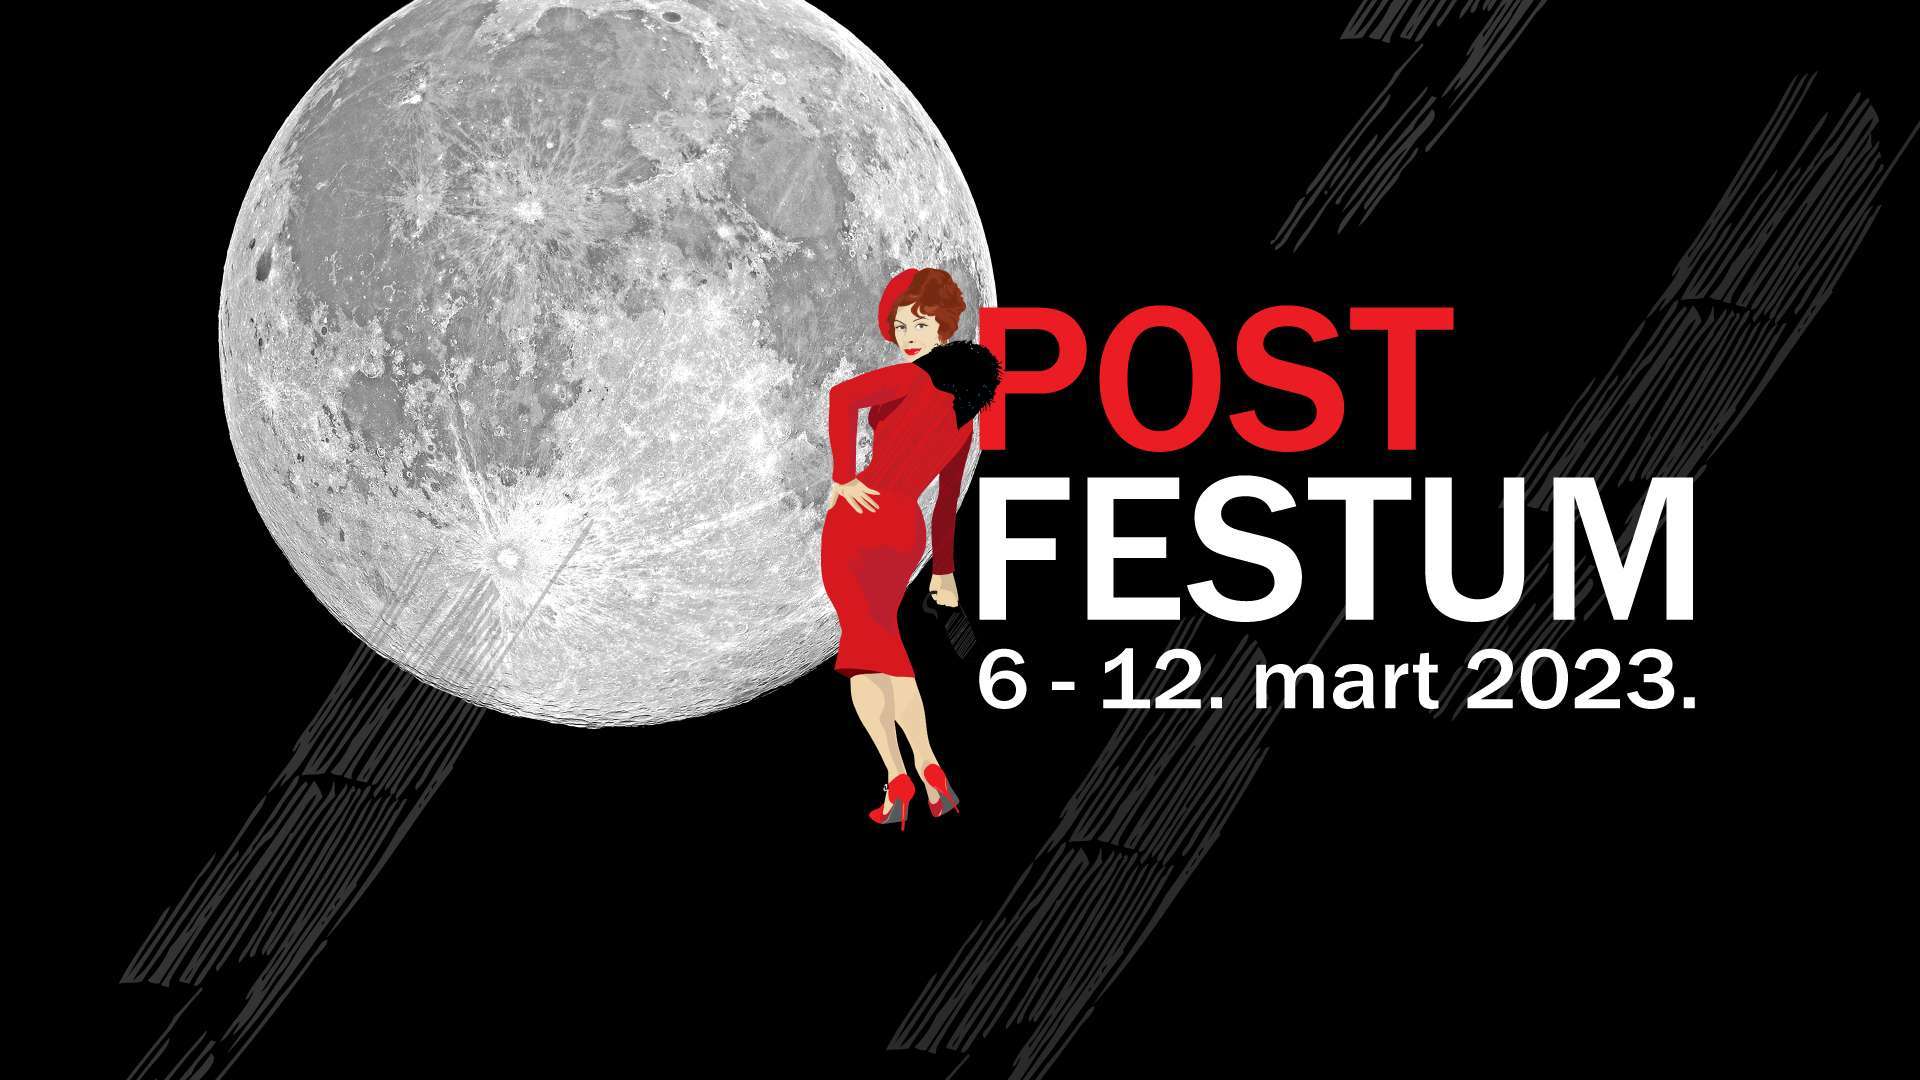 POSTFESTUM PROGRAMME – Films from FEST